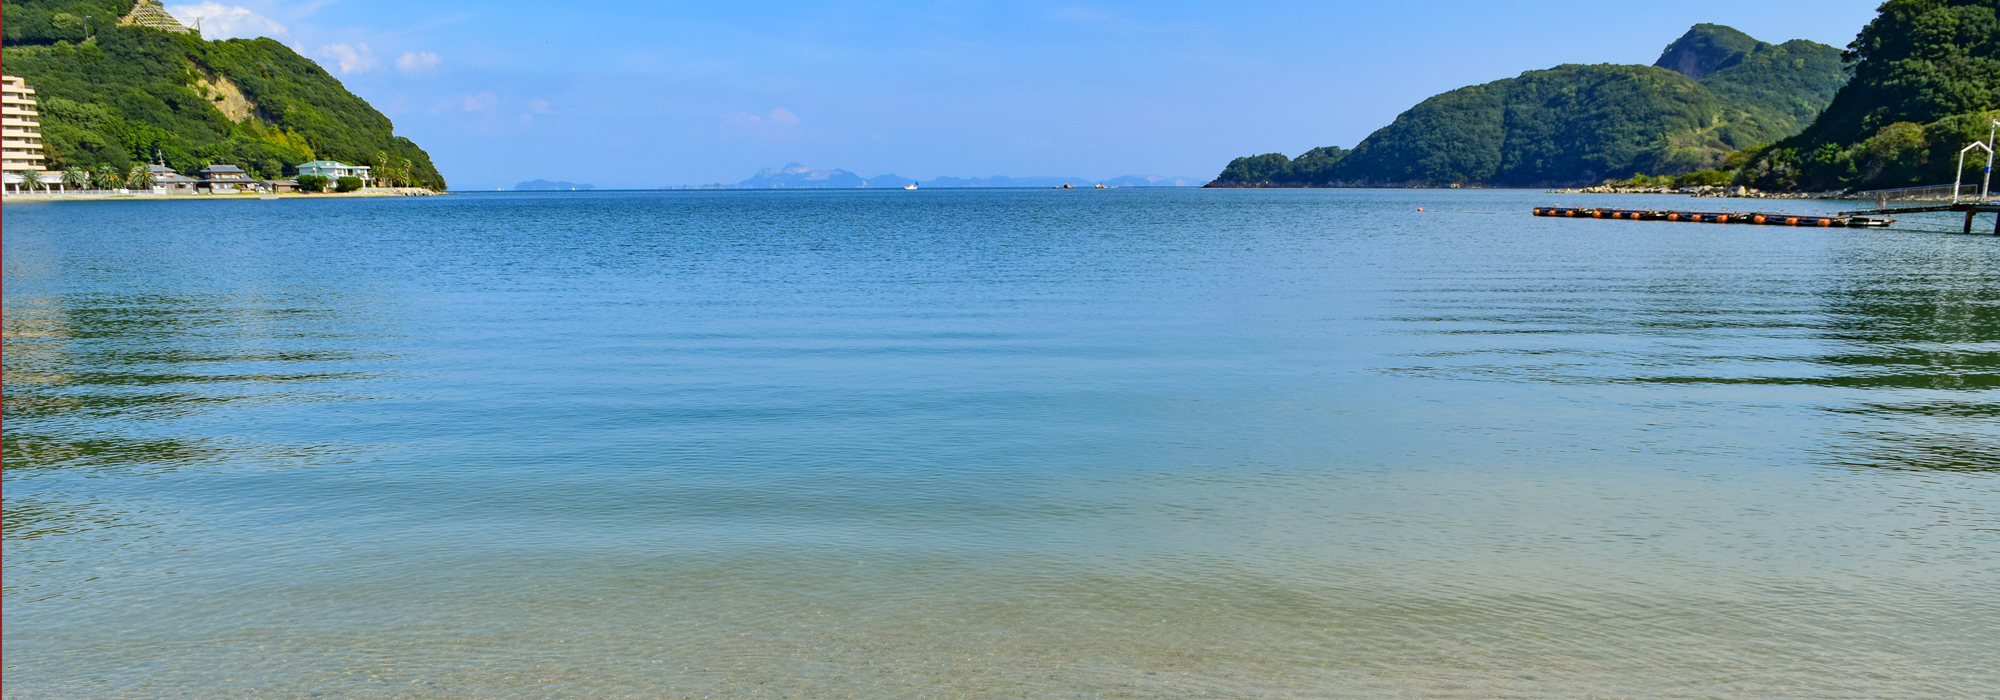 瀬戸内海の離島・香川県小豆島の透き通る綺麗な海